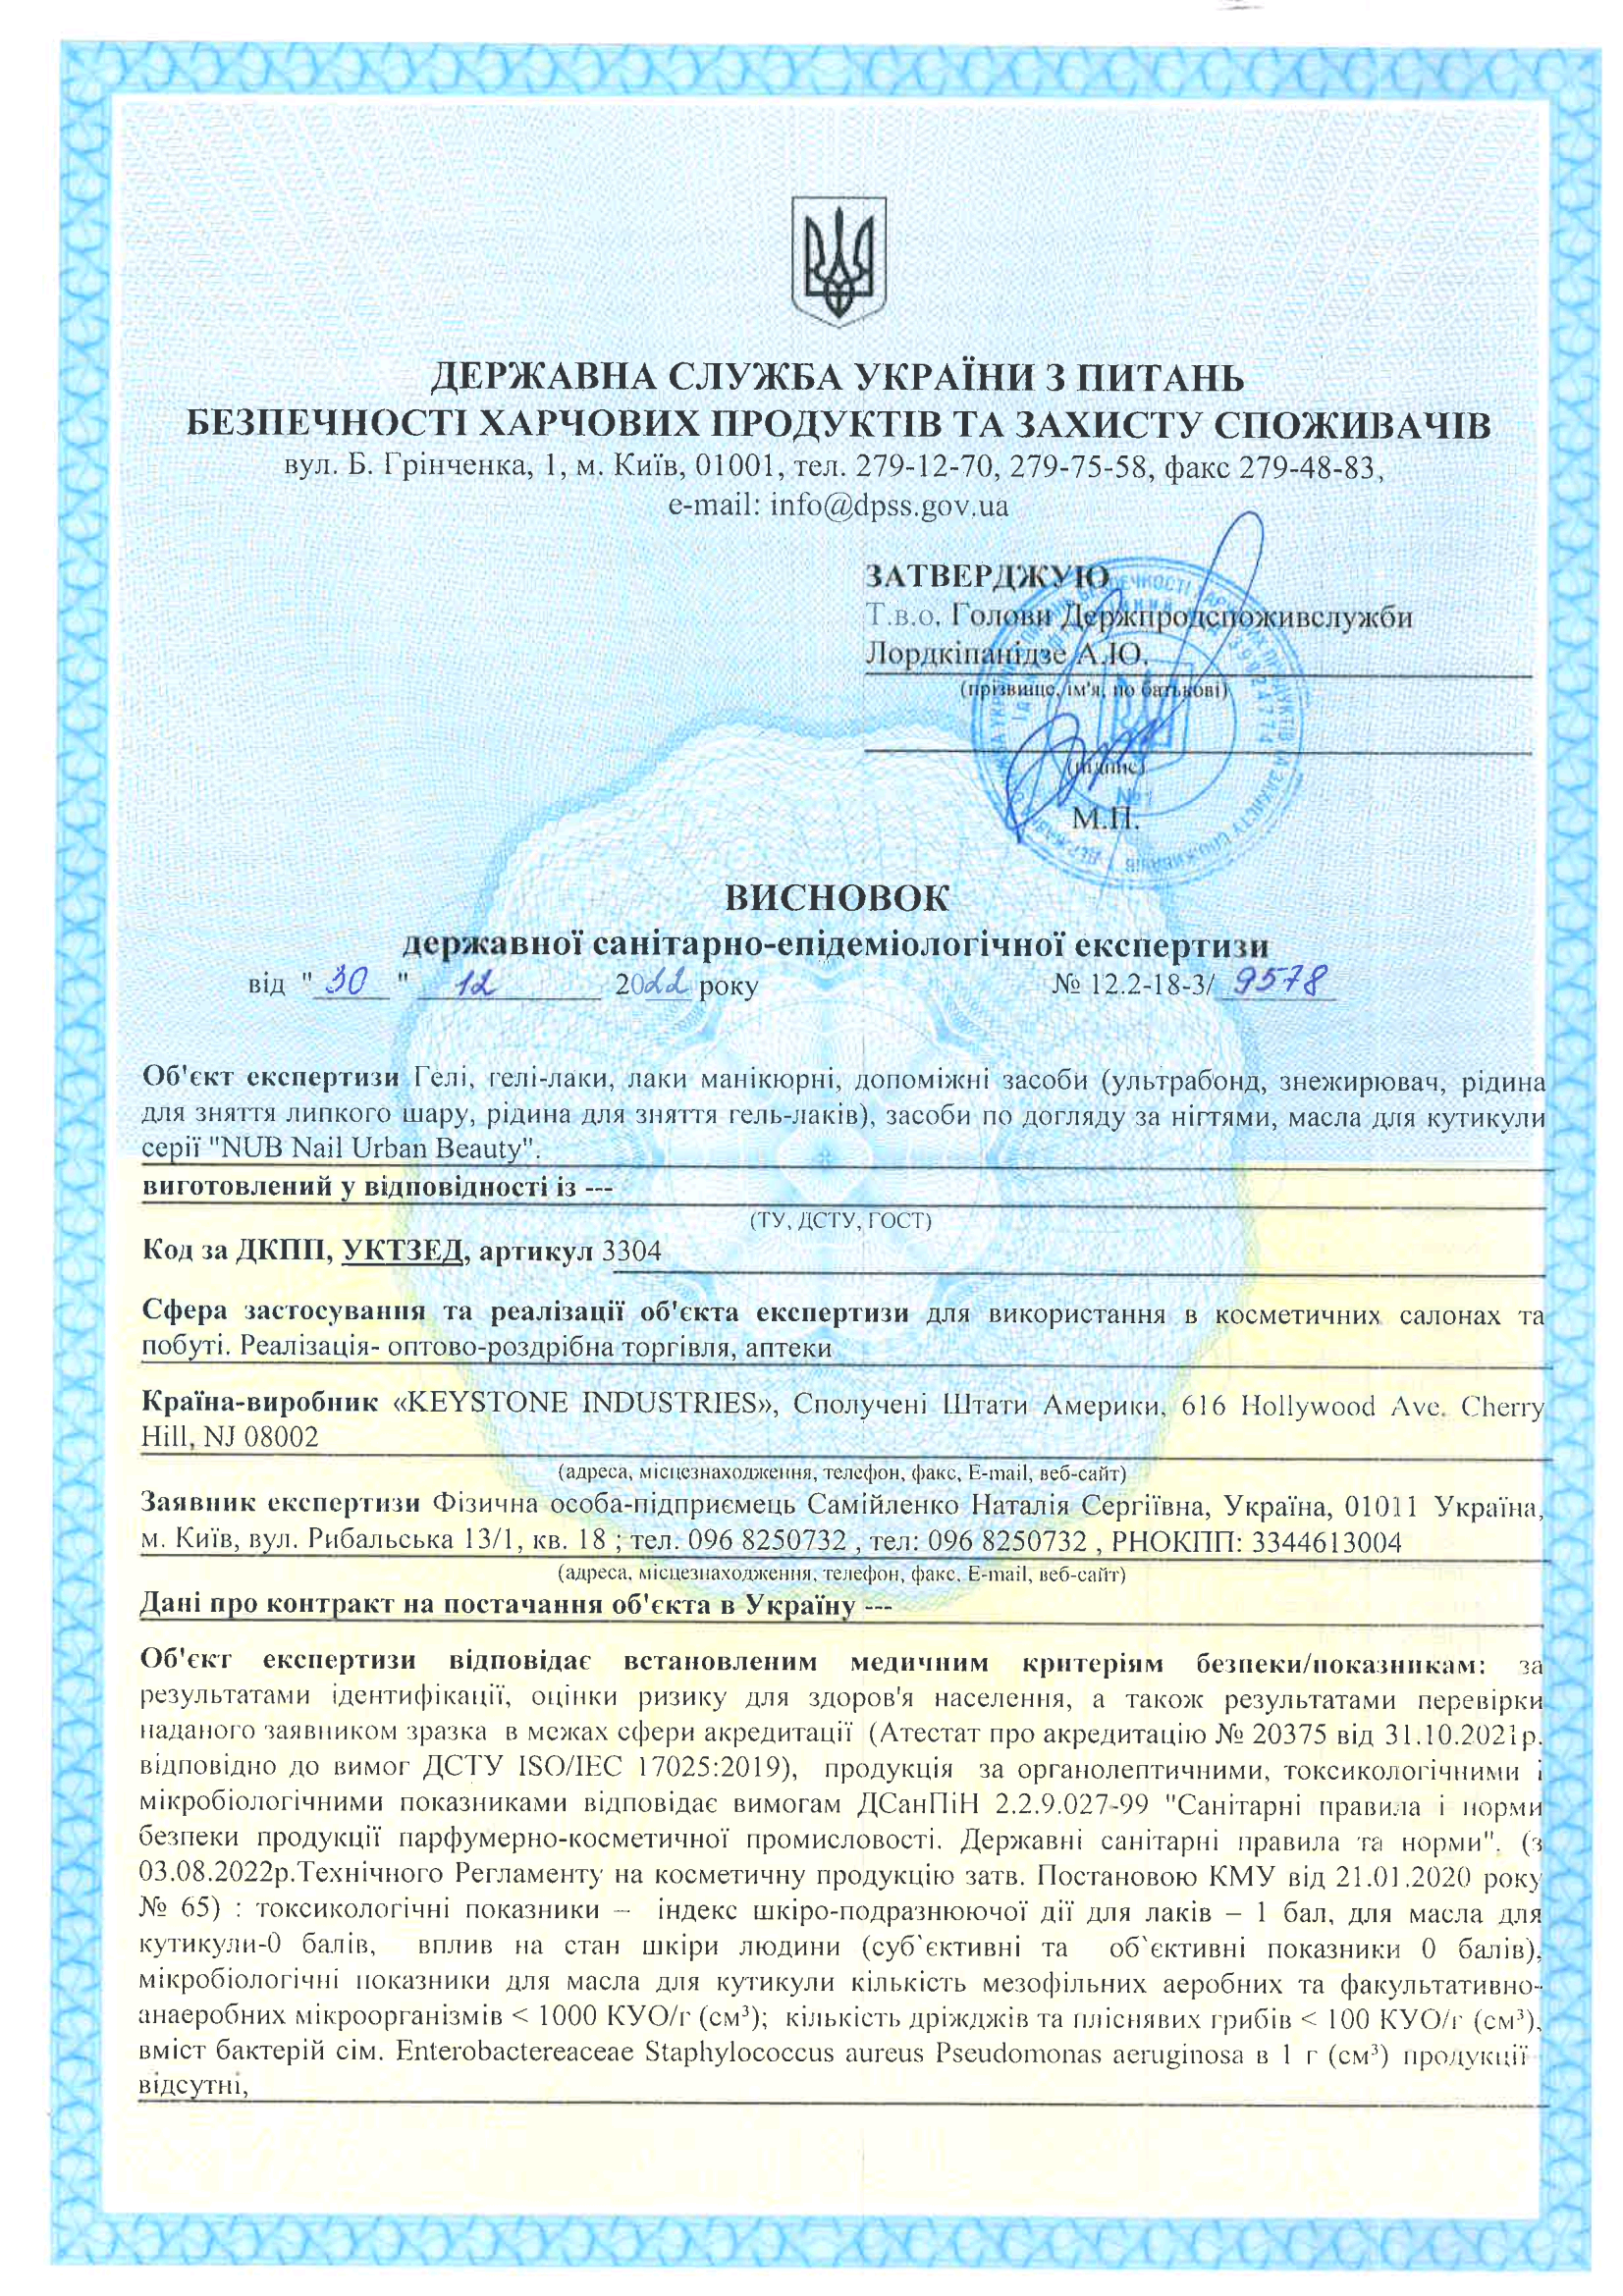 Сертифікат якості на гель-лаки NUB, сторінка 1